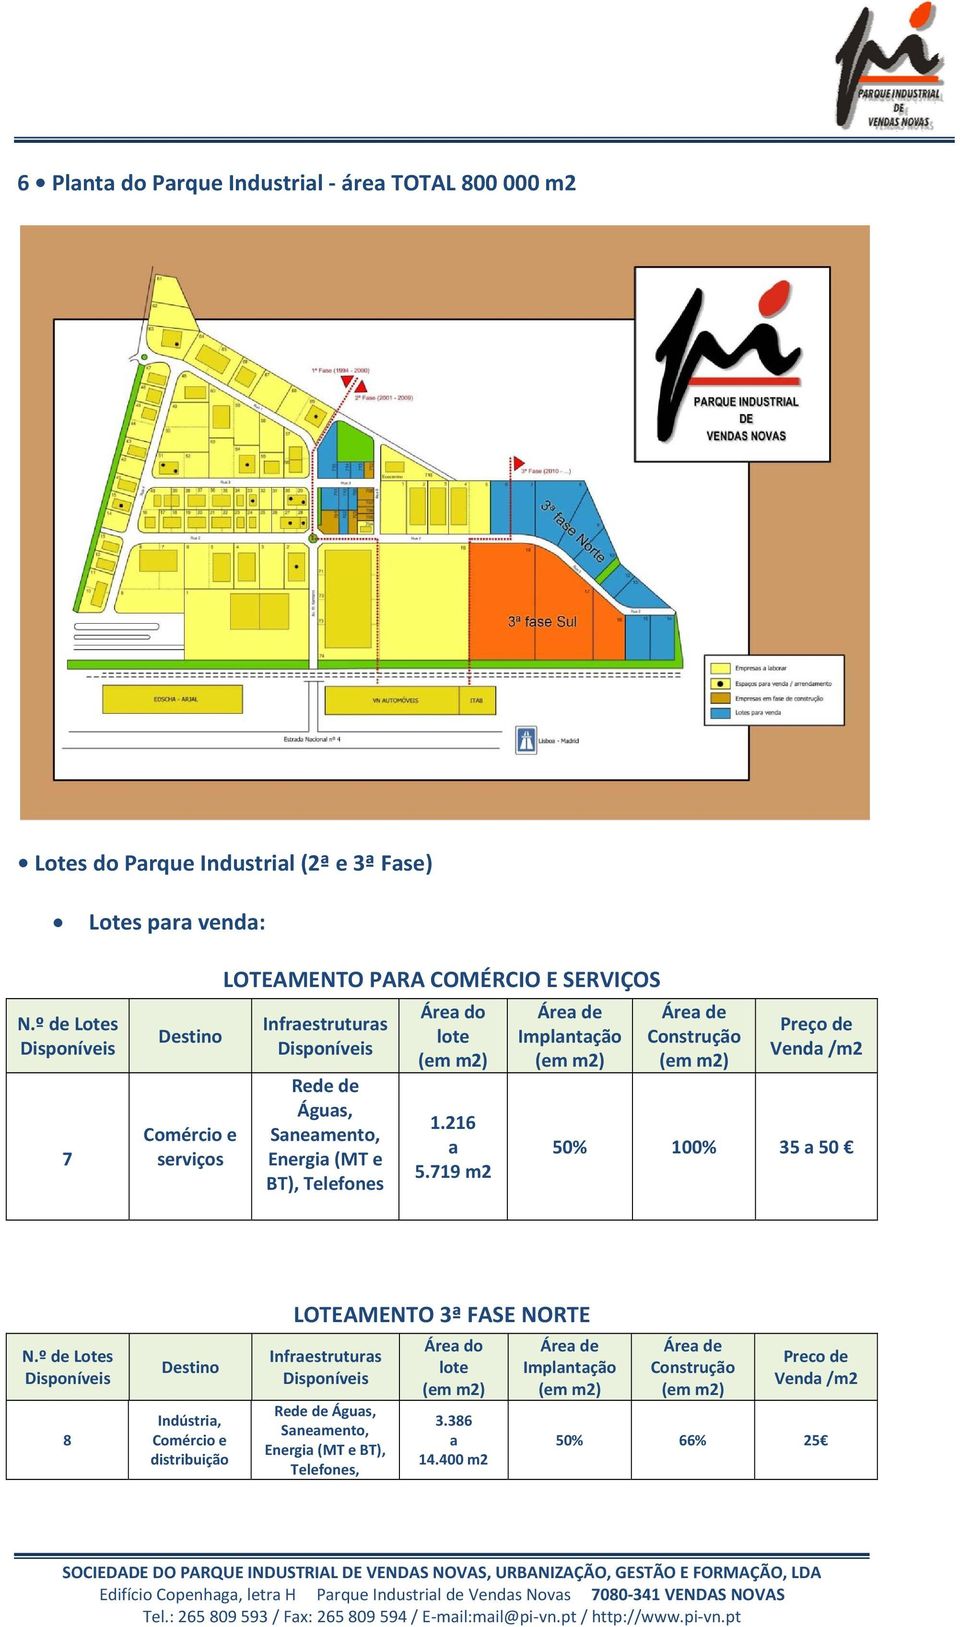 Telefones Área do lote 1.216 a 5.719 m2 Área de Implantação Área de Construção Preço de Venda /m2 50% 100% 35 a 50 N.